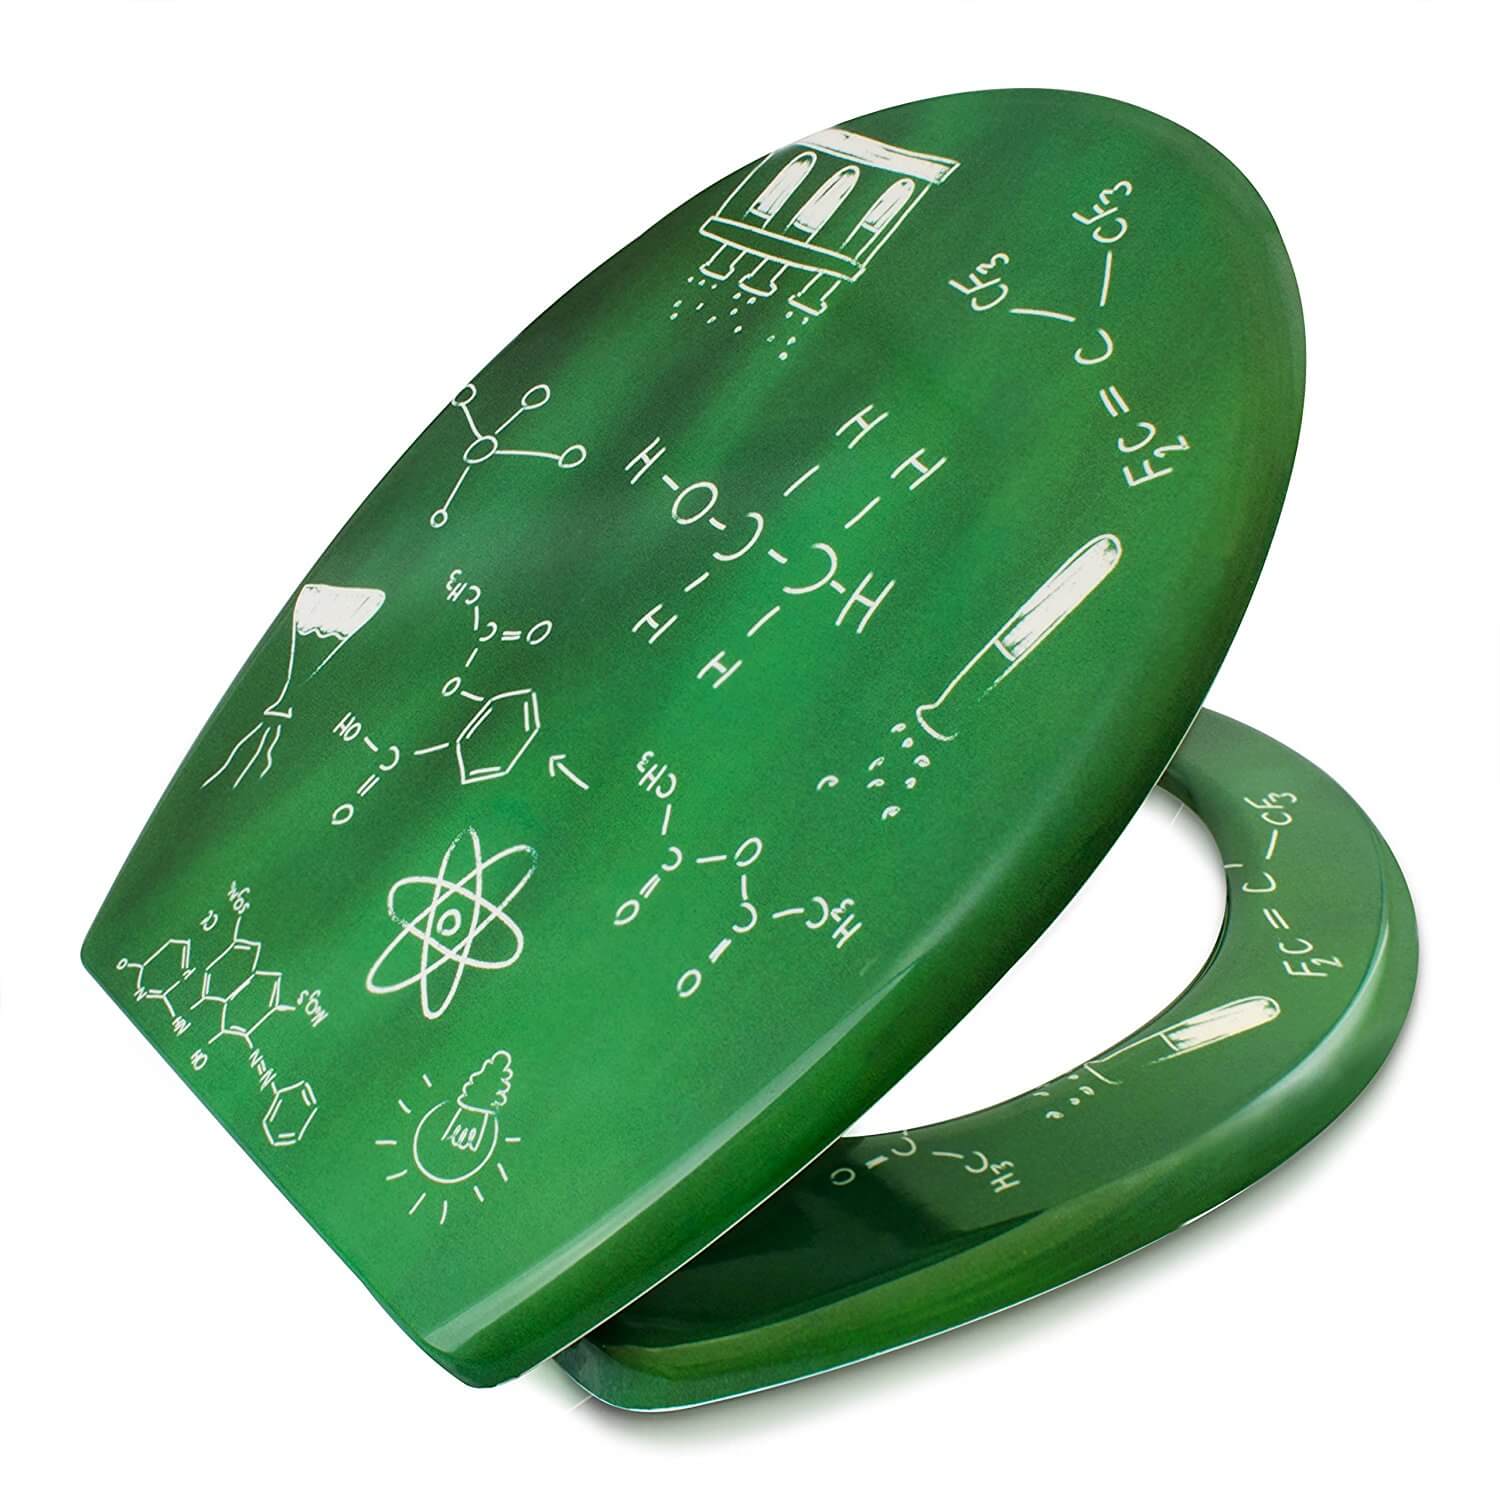 Nerd Geschenke - Die besten Gadgets für Geeks - Toilettensitz mit chemischen Formeln - Absenkautomatik Toilettendeckel